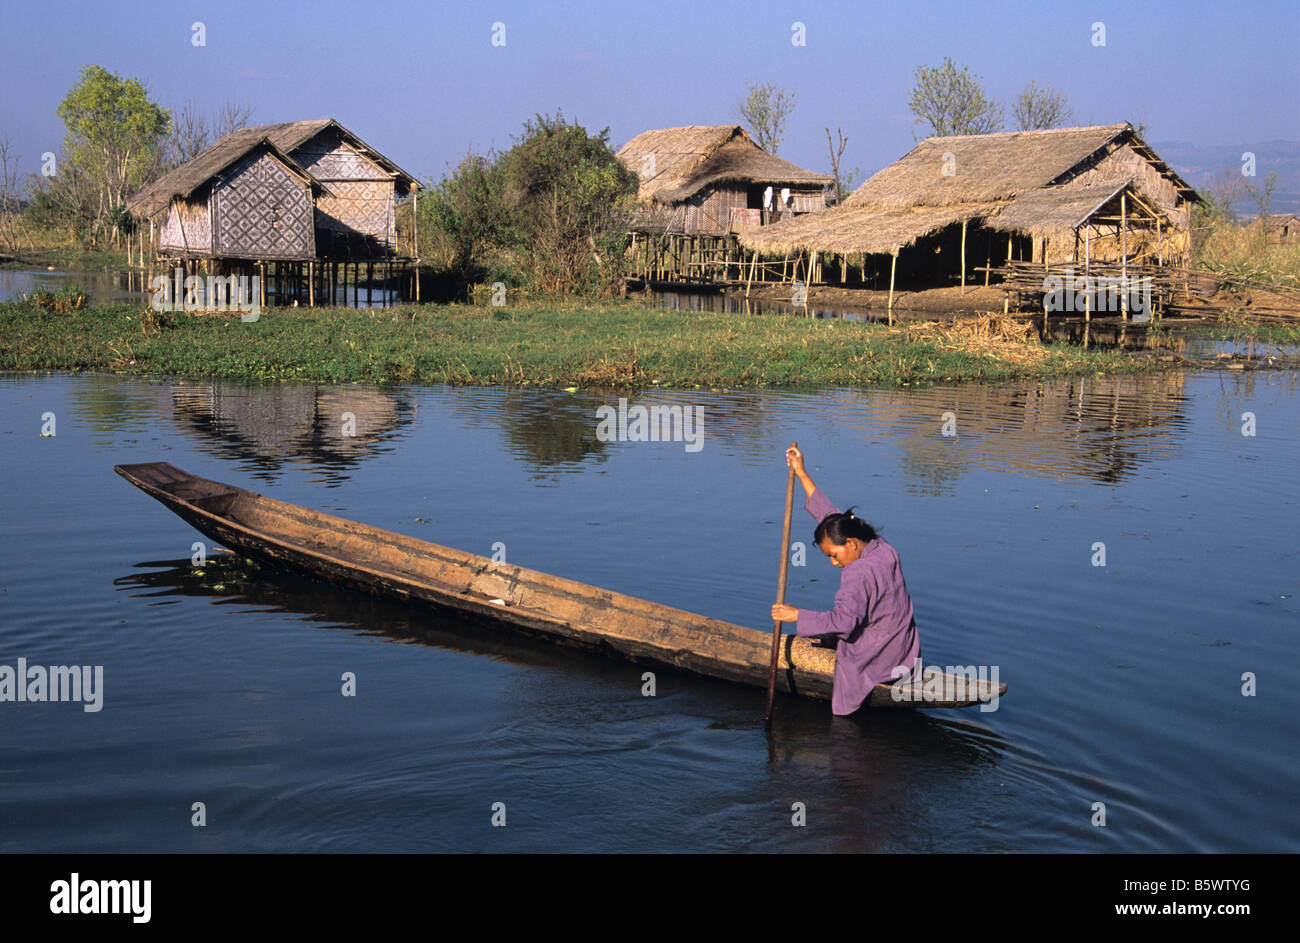 Eine burmesische Frau Kanus durch ein Stelzenläufer Dorf aufgewachsen auf Pilotis, Inle-See, Burma bzw. Myanmar Stockfoto